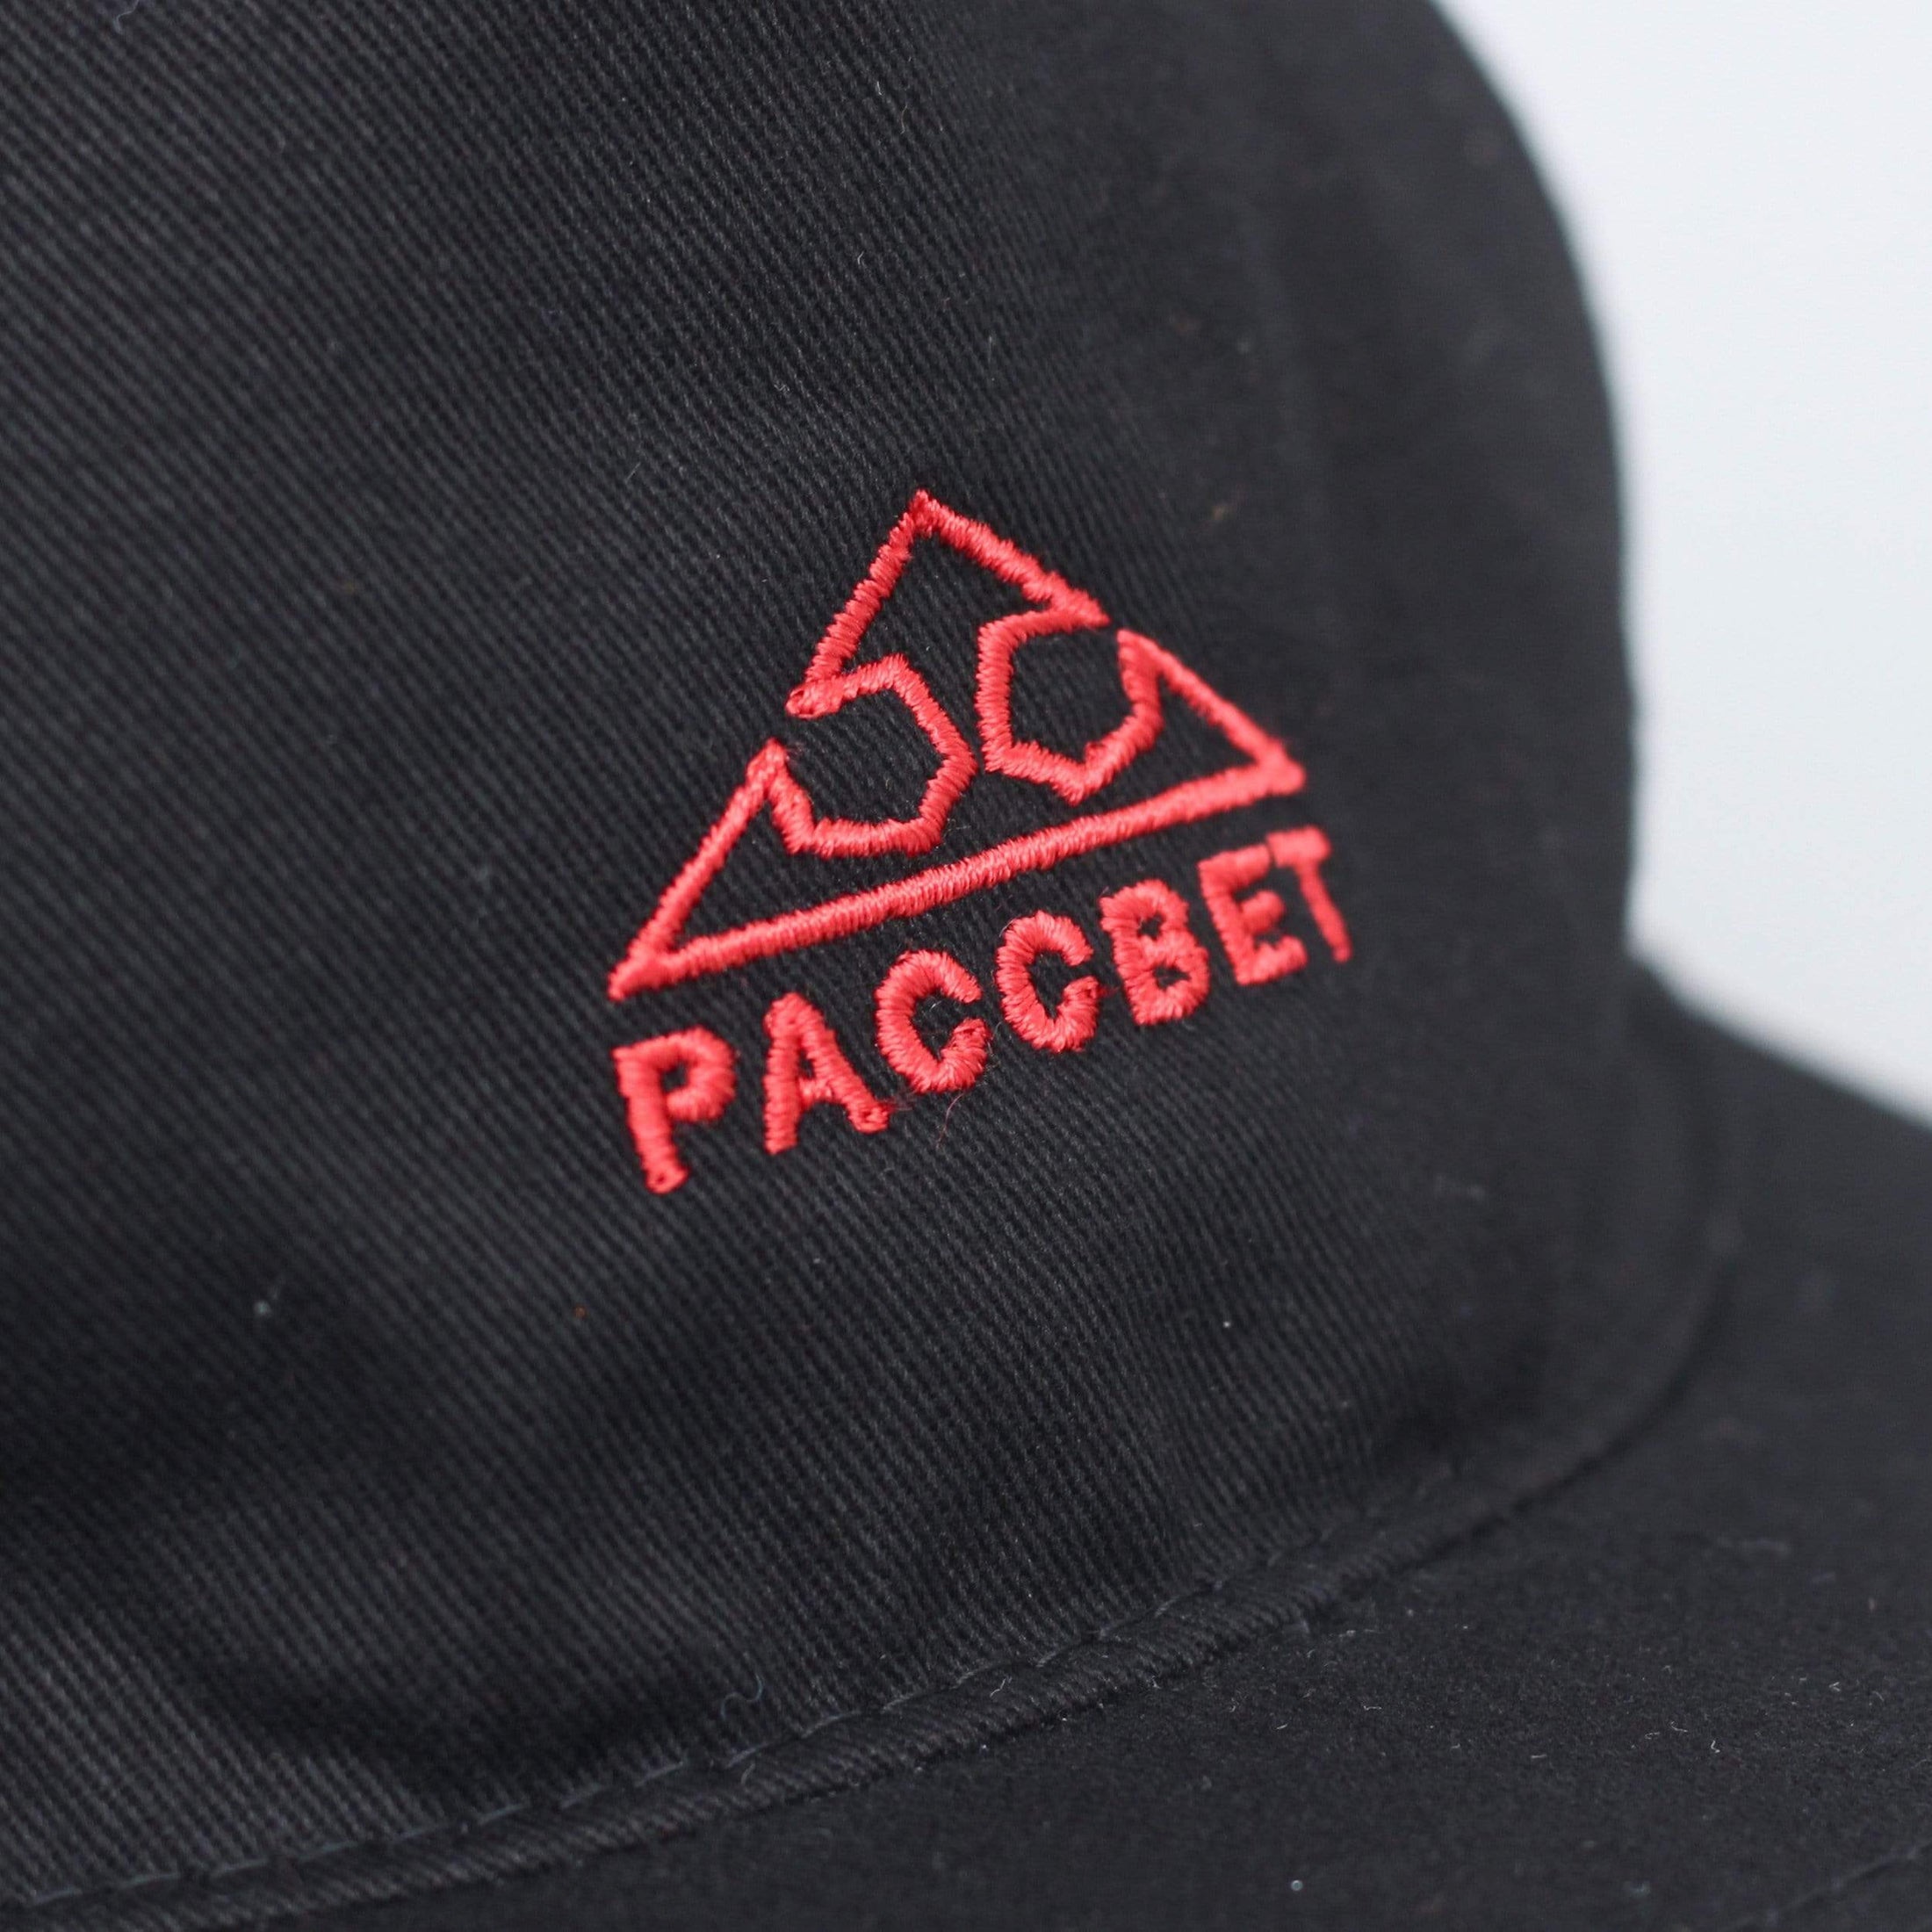 Paccbet Cap Black